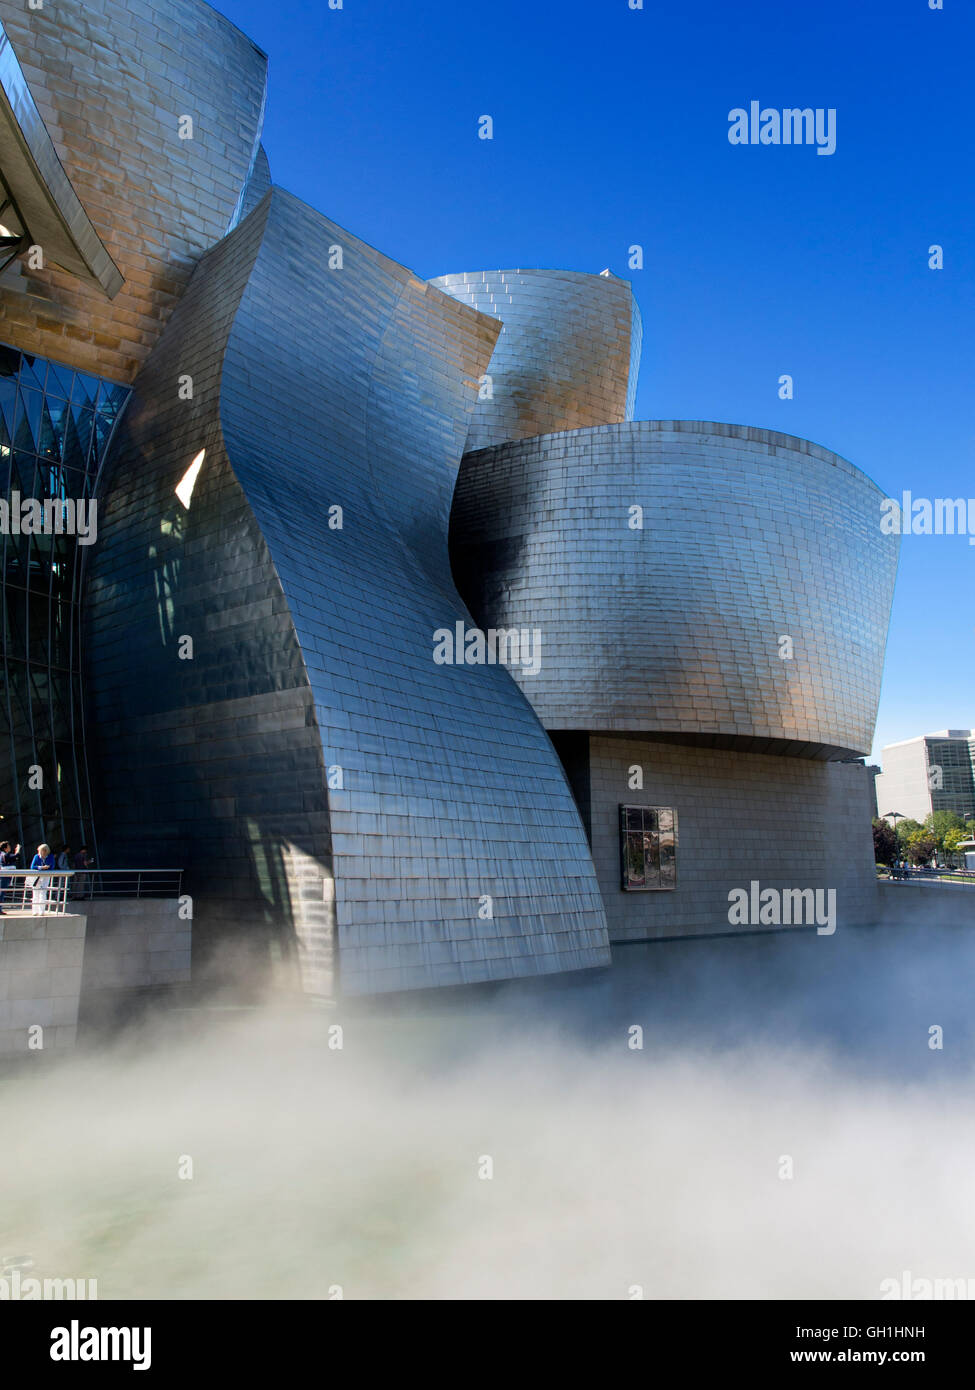 The iconic Guggenheim Museum in Bilbao, Spain 12 Stock Photo